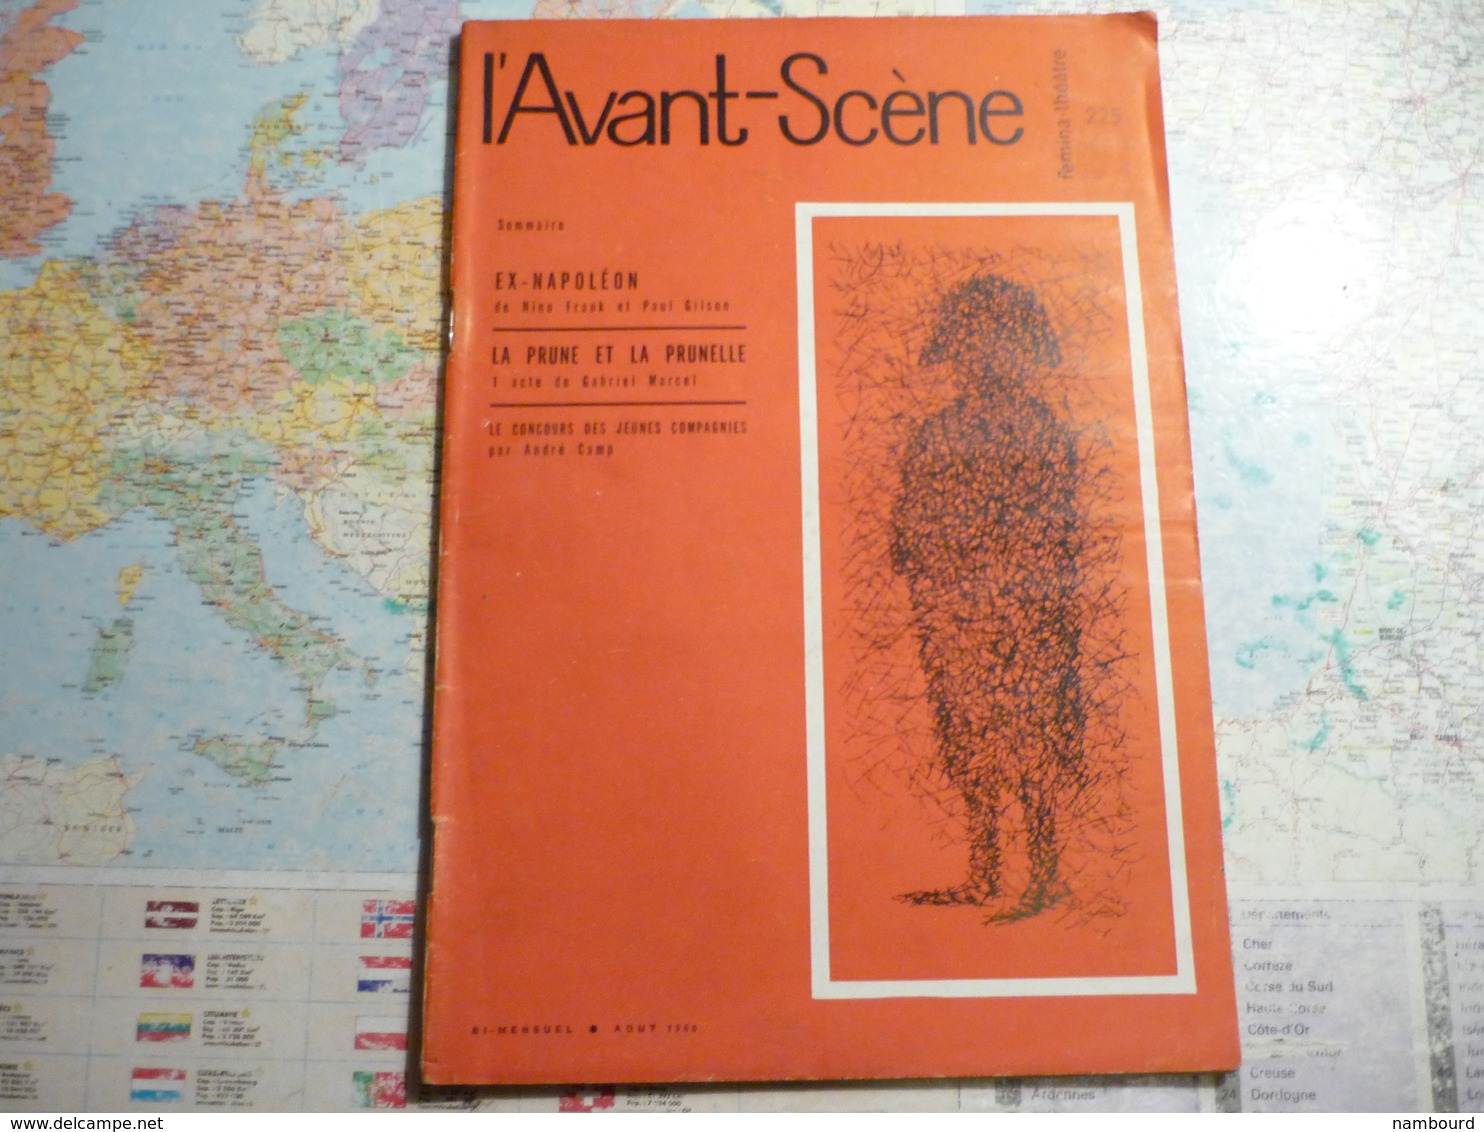 L'Avant-Scène femina-Théâtre lot de 14 numéros consécurifs du N°221 (1-er Juin 1960) au N°234 (1-er Janvier 1961)